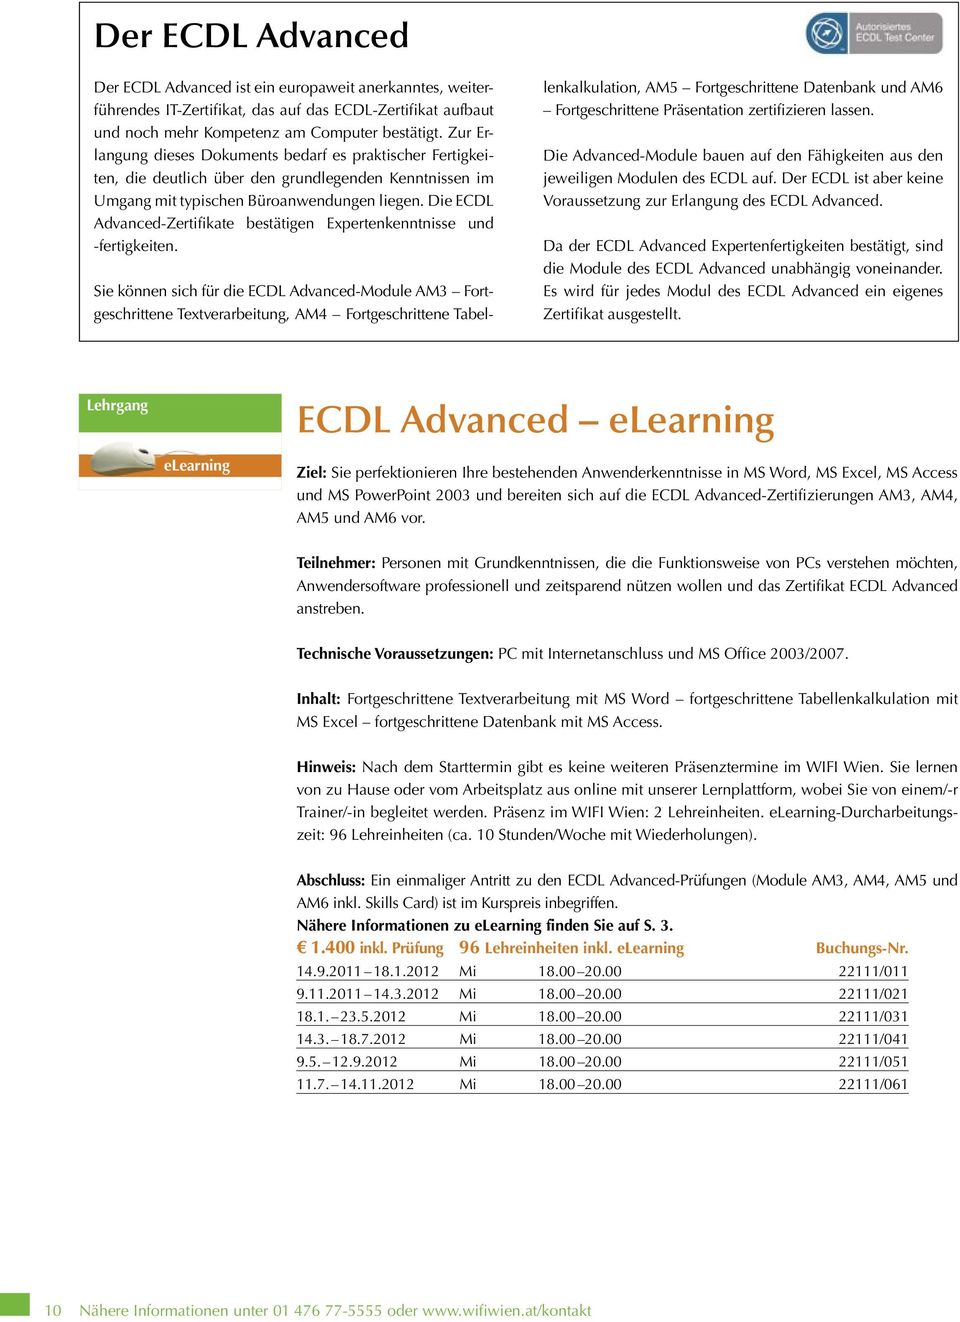 Die ECDL Advanced-Zertifikate bestätigen Expertenkenntnisse und -fertigkeiten.